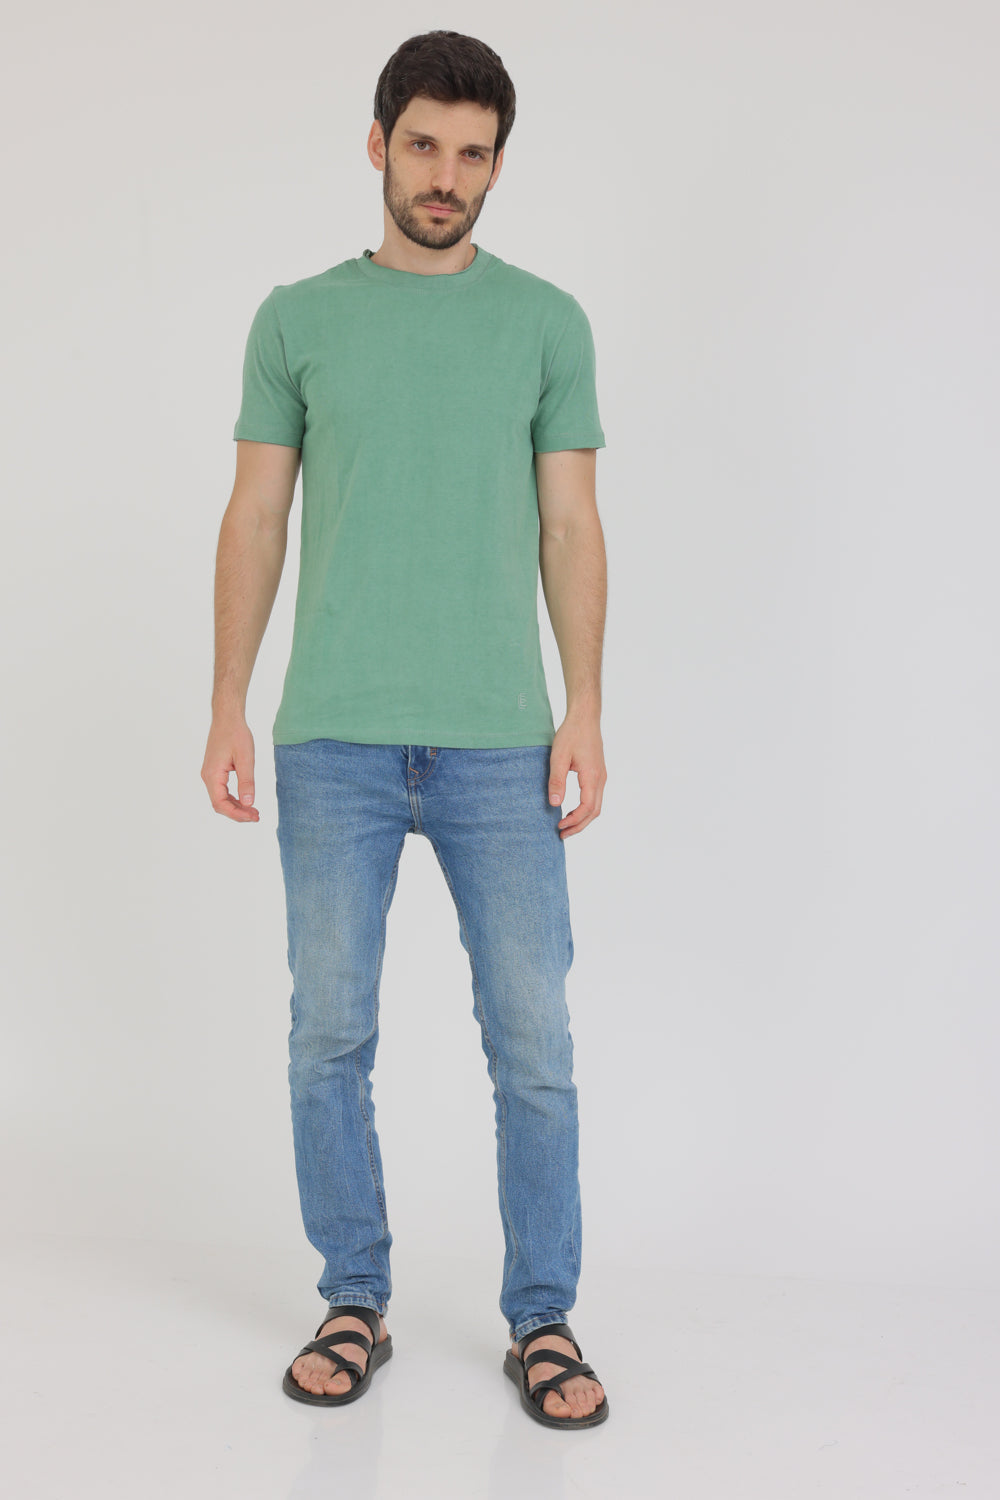 חולצת טי שירט קצרה לגברים צבע ירוק בהיר